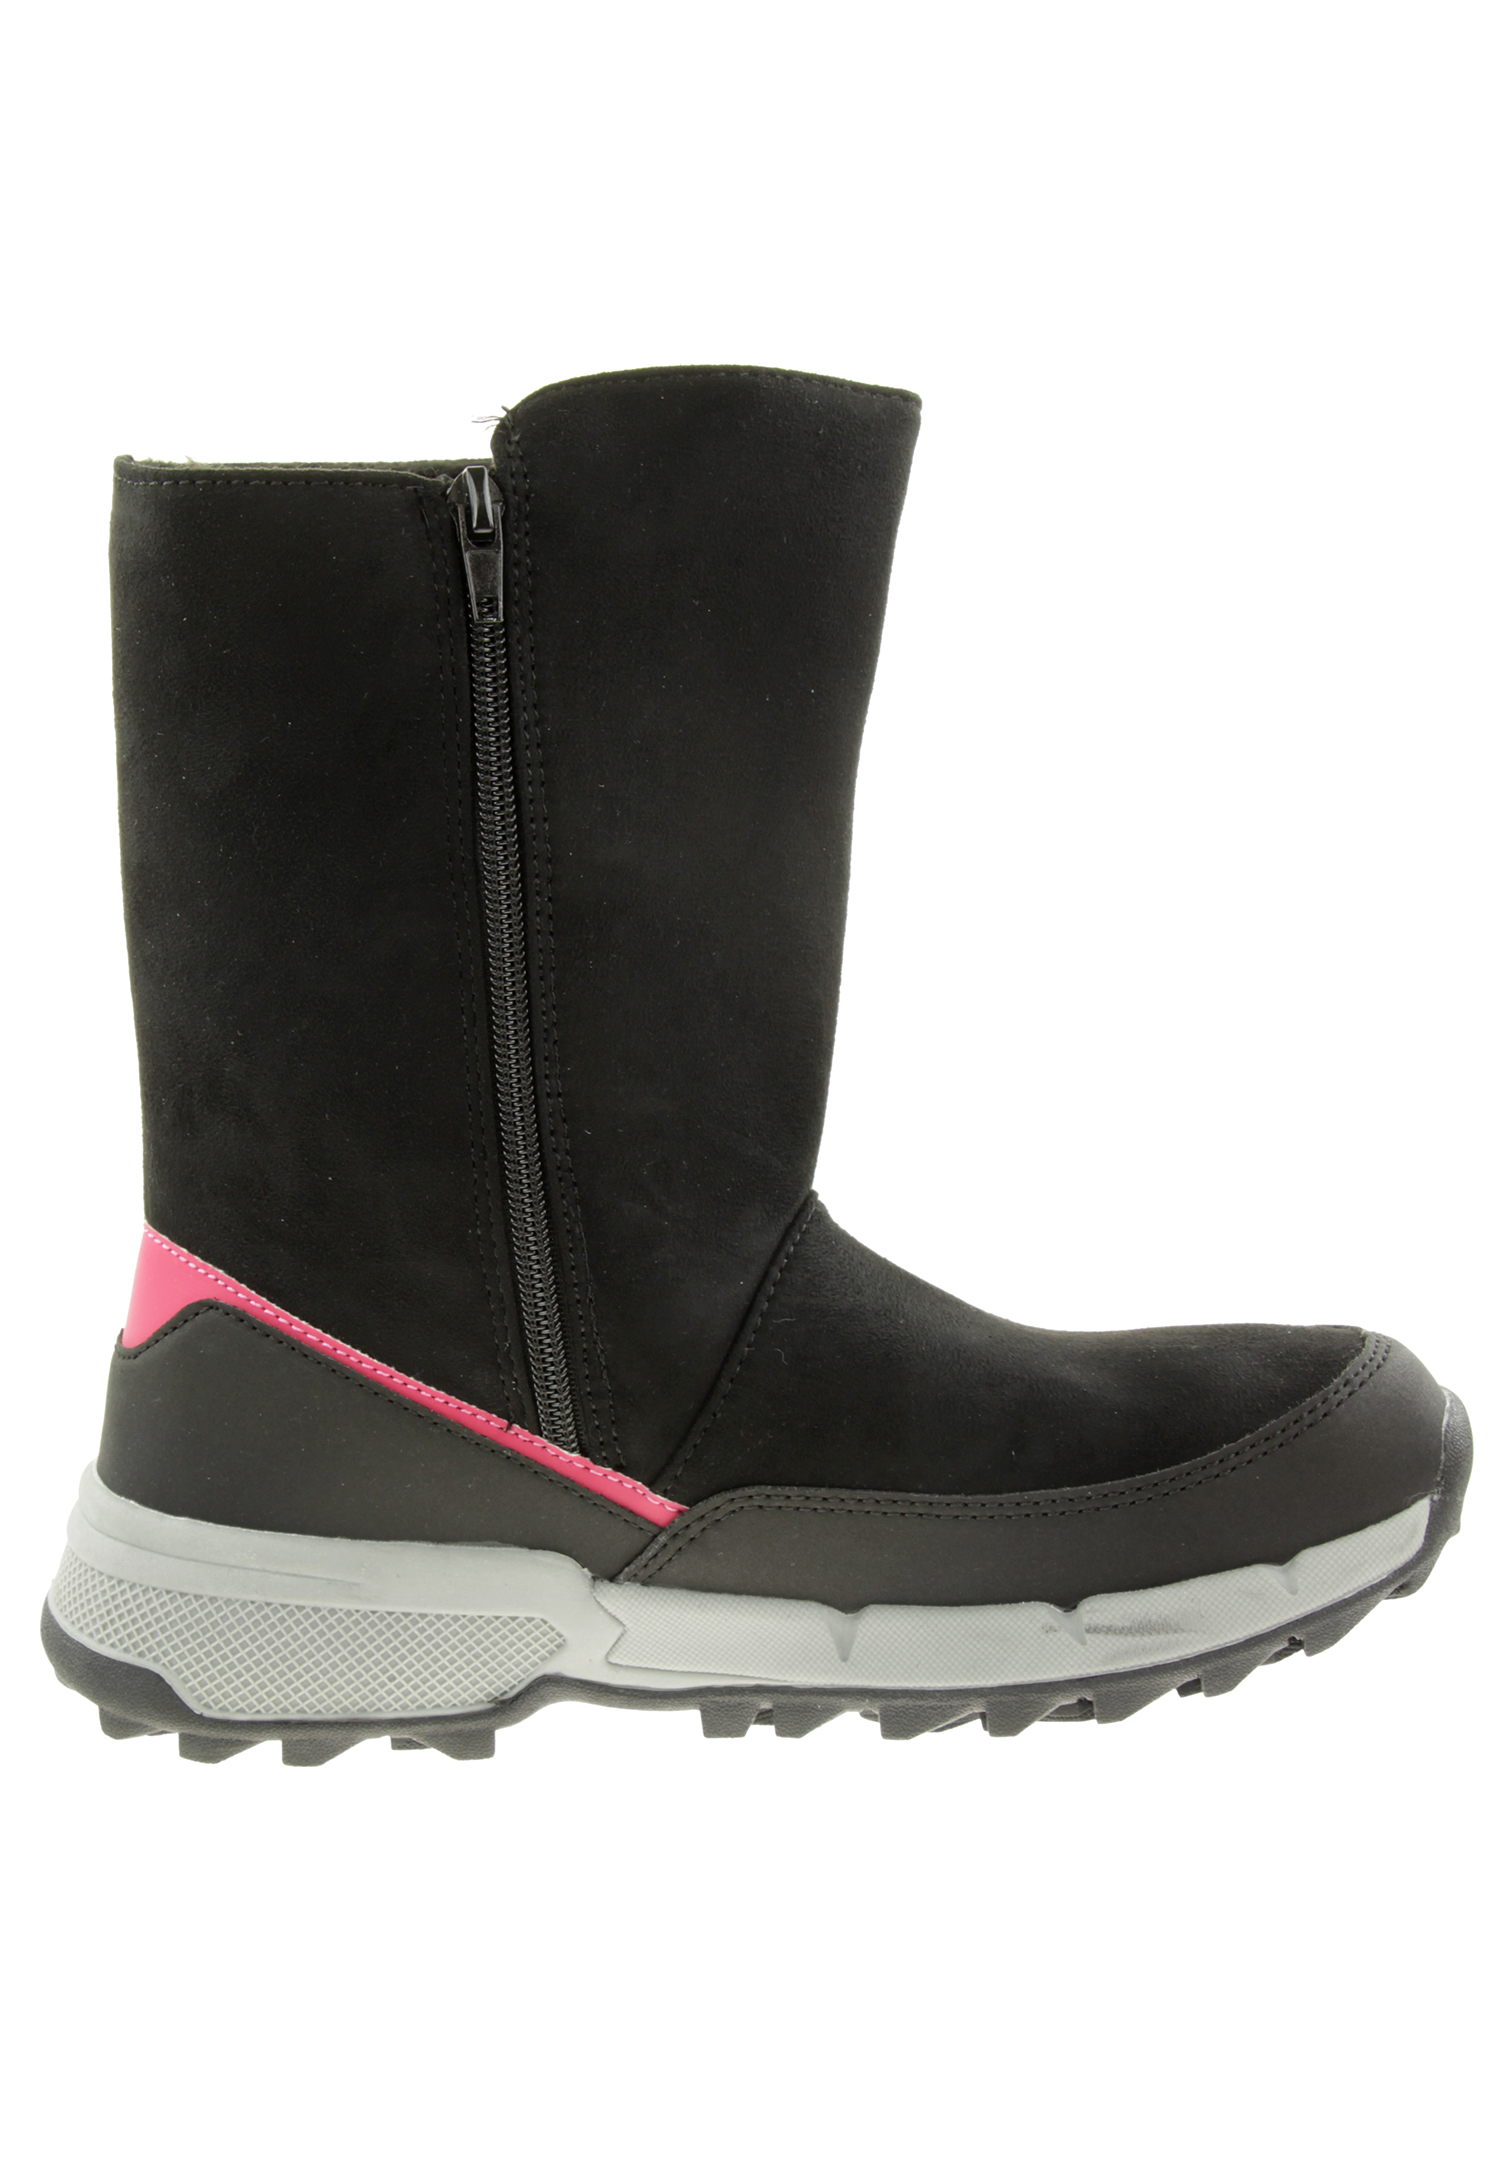 Kappa Kids Stiefelette Winterschuh Boots 260901K schwarz pink